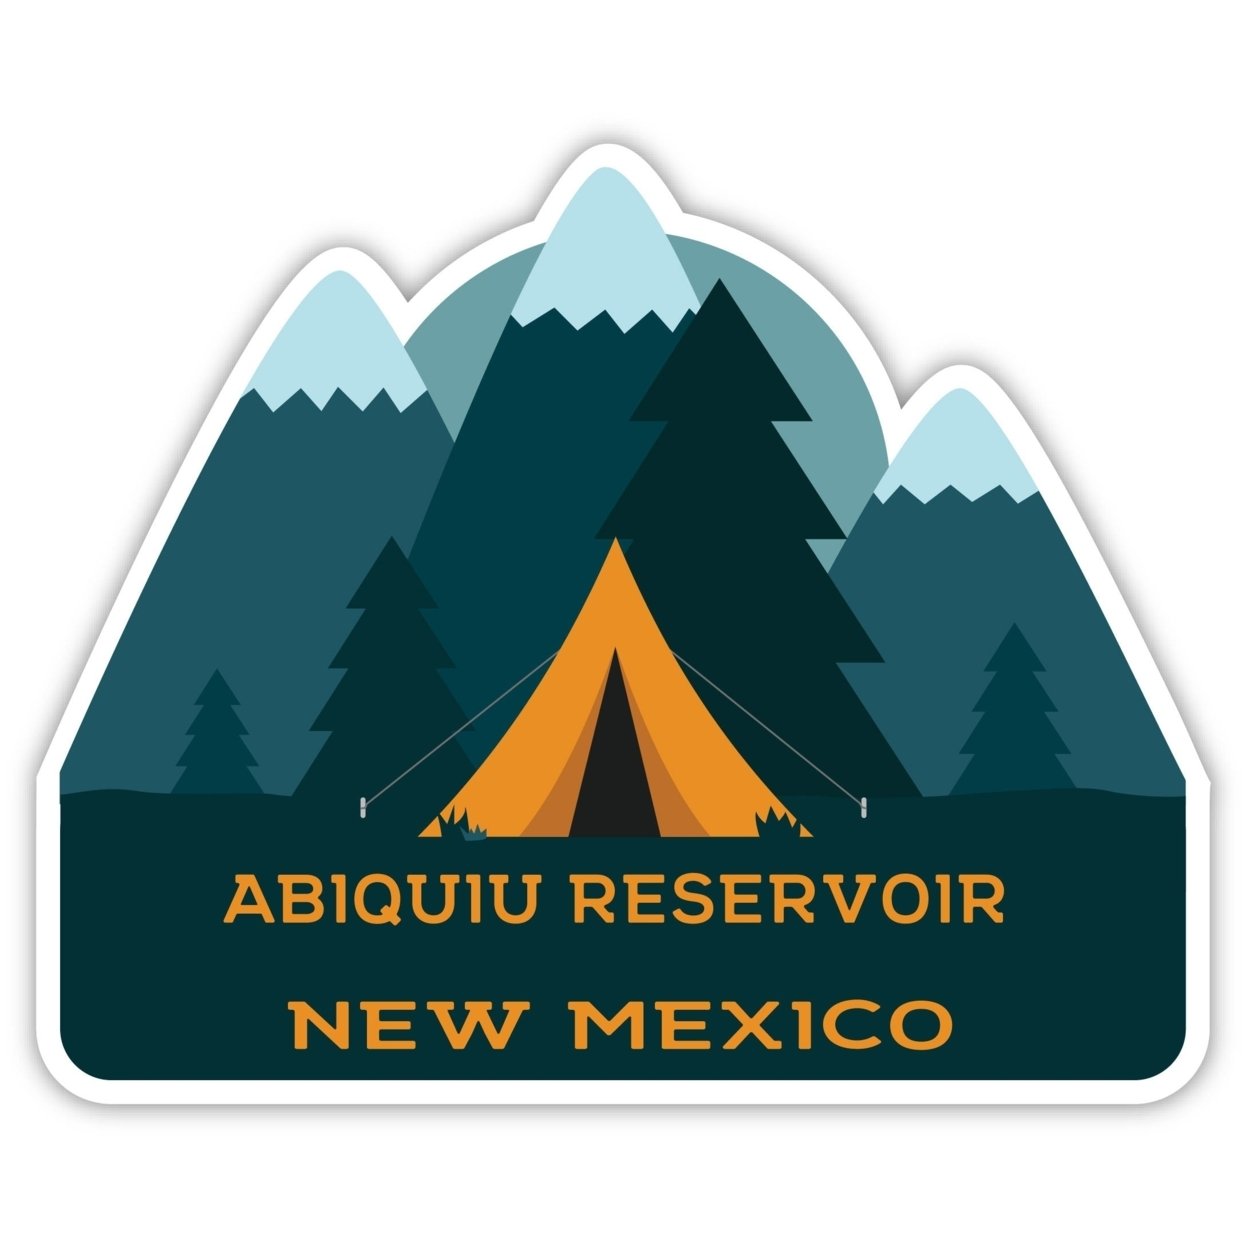 Abiquiu Reservoir New Mexico Souvenir Decorative Stickers (Choose Theme And Size) - Single Unit, 12-Inch, Tent